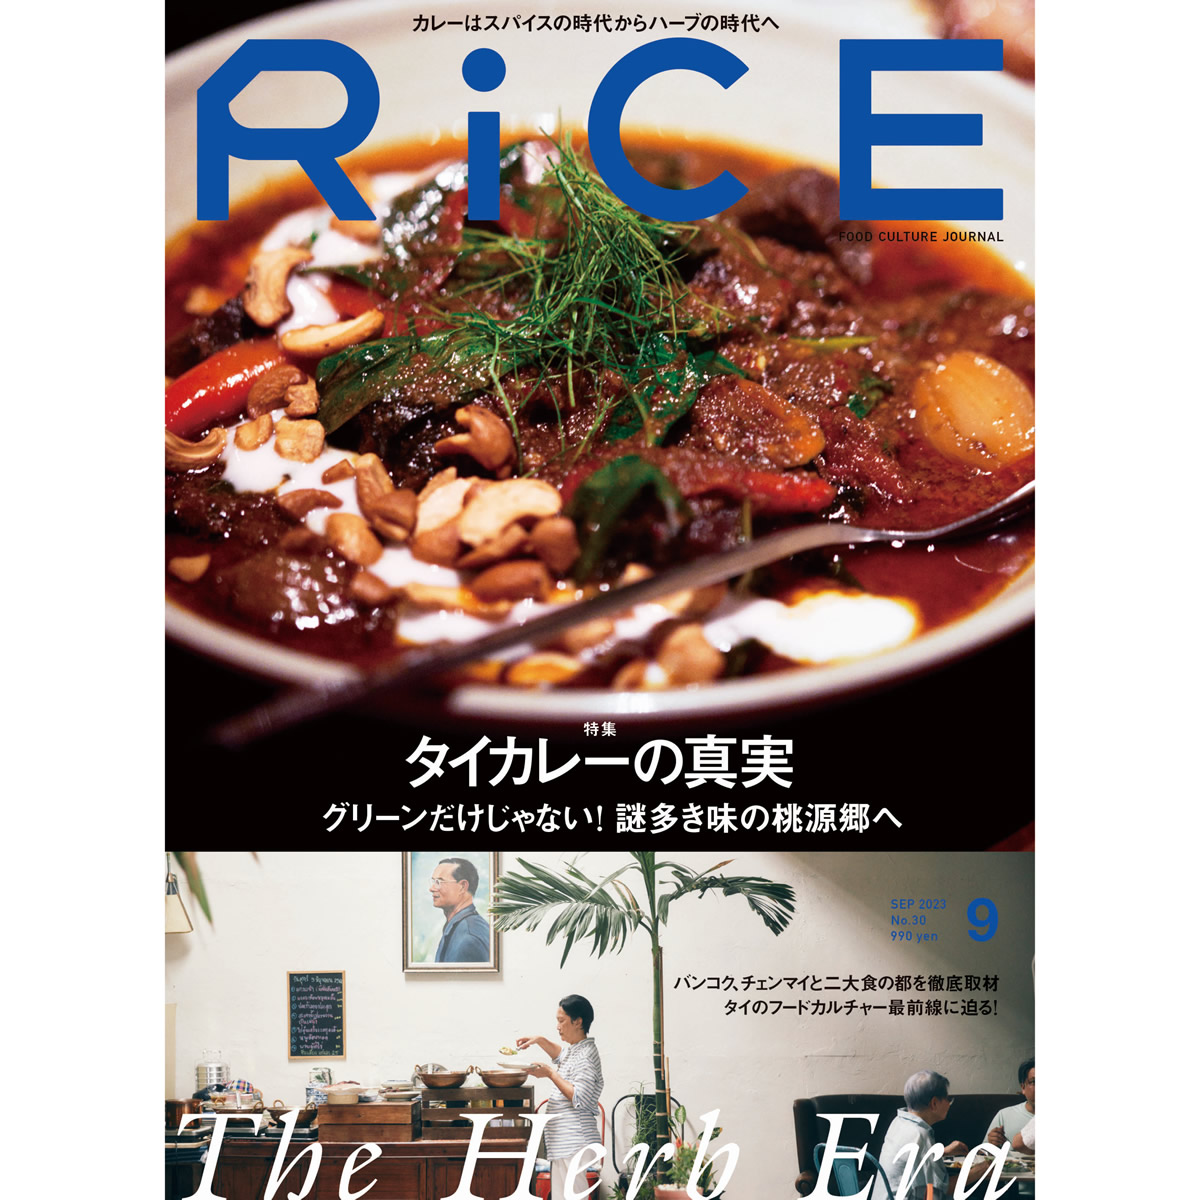 フードカルチャー誌「RICE」最新版第30号はタイ料理特集「タイカレーの真実」